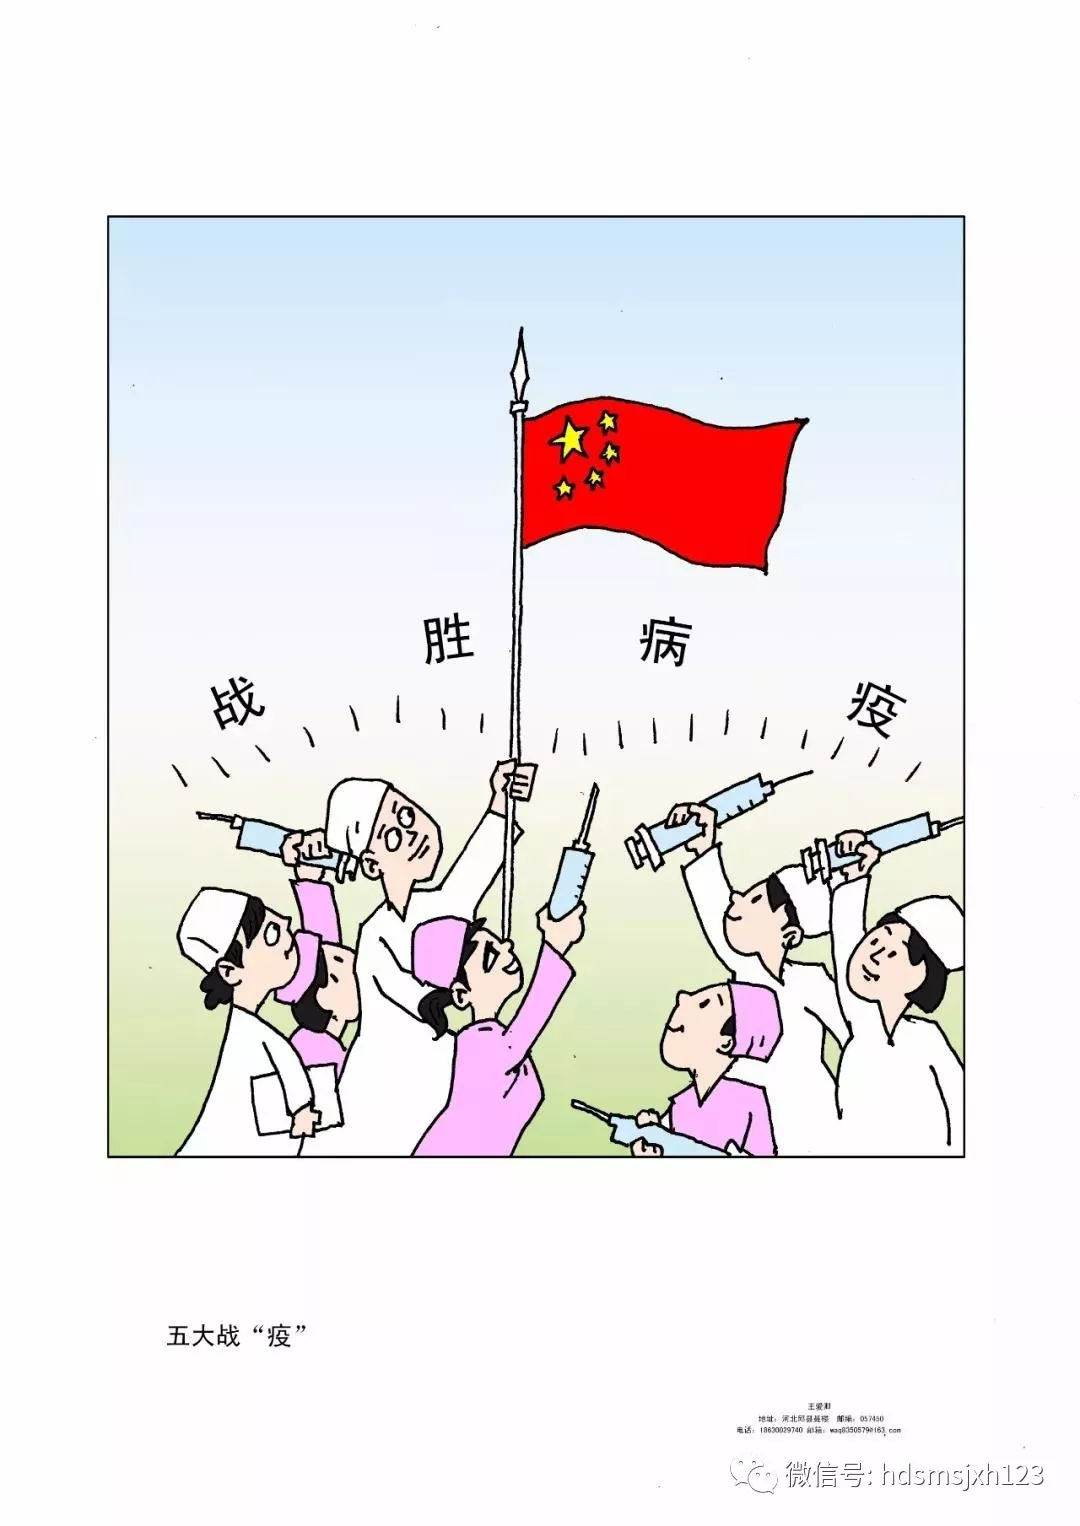 众志成城,抗击疫情——邯郸美术家原创抗疫漫画篇